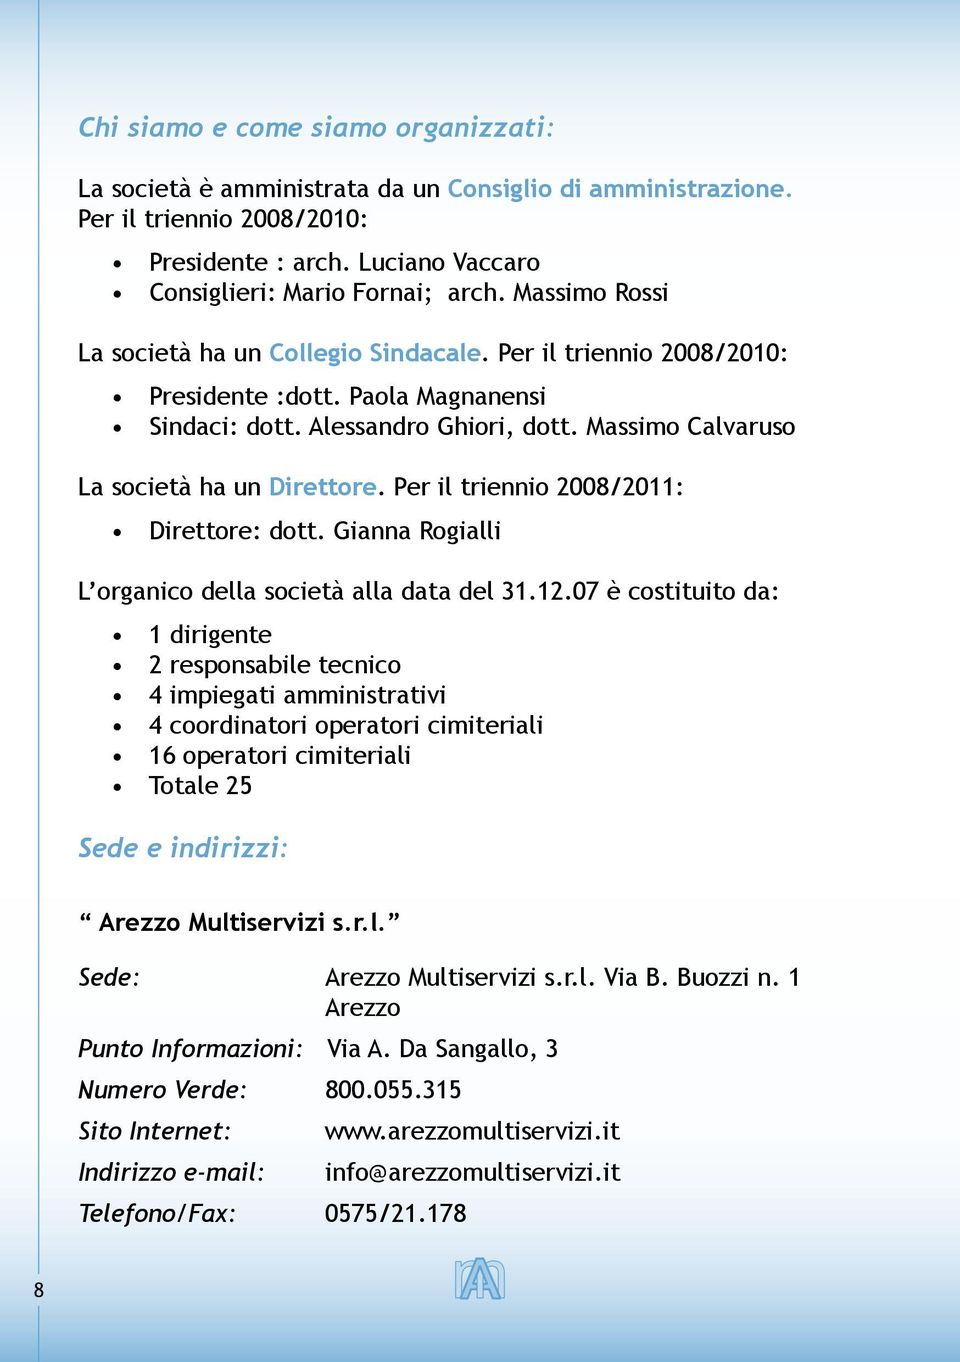 Per il triennio 2008/2011: Direttore: dott. Gianna Rogialli L organico della società alla data del 31.12.